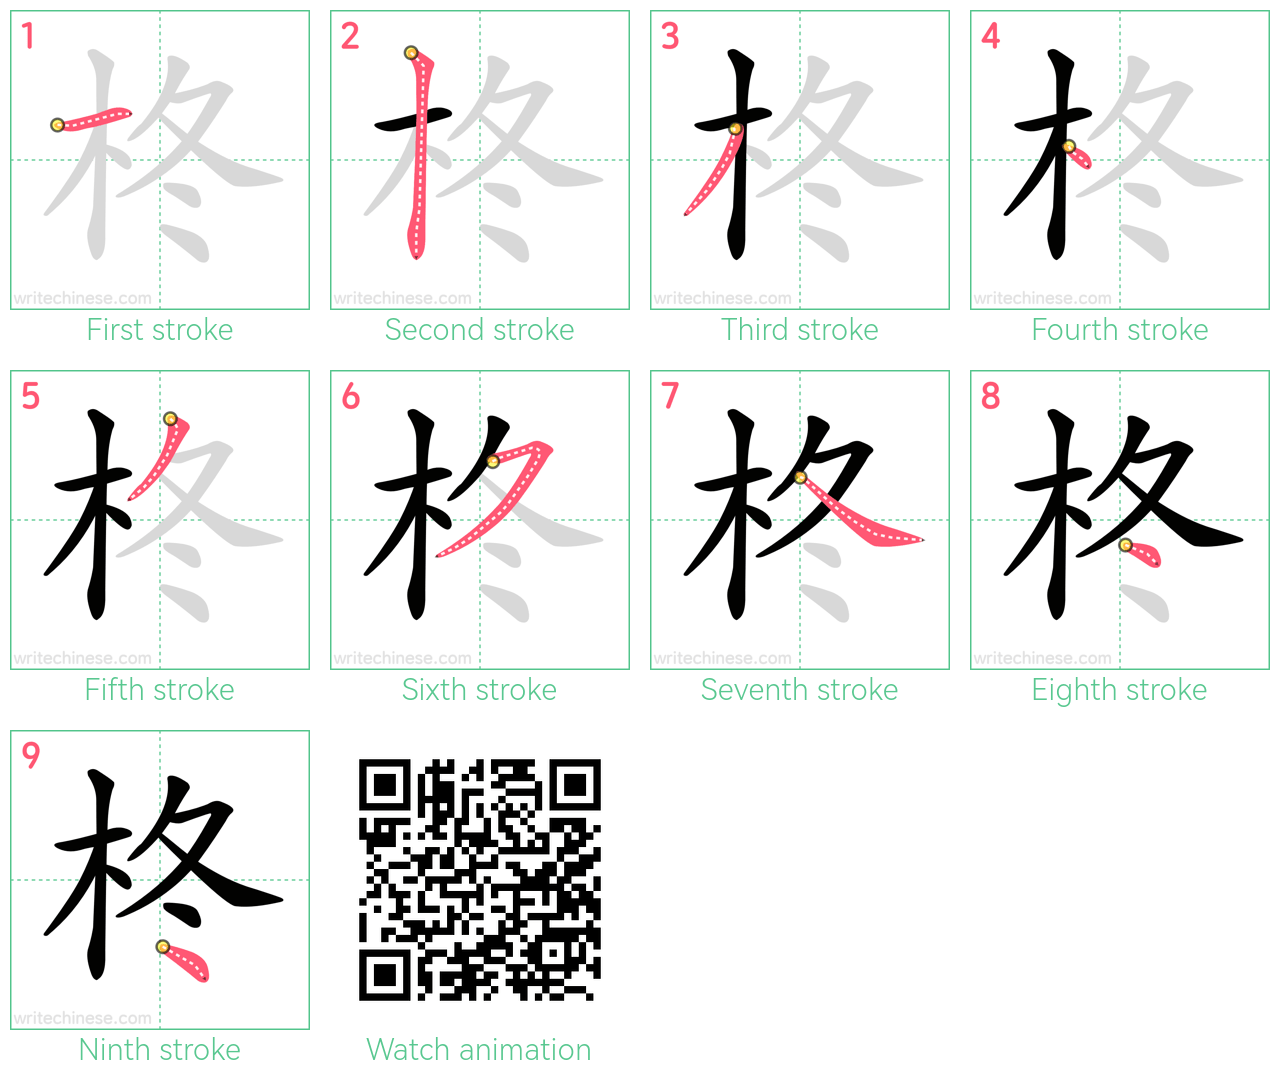 柊 step-by-step stroke order diagrams